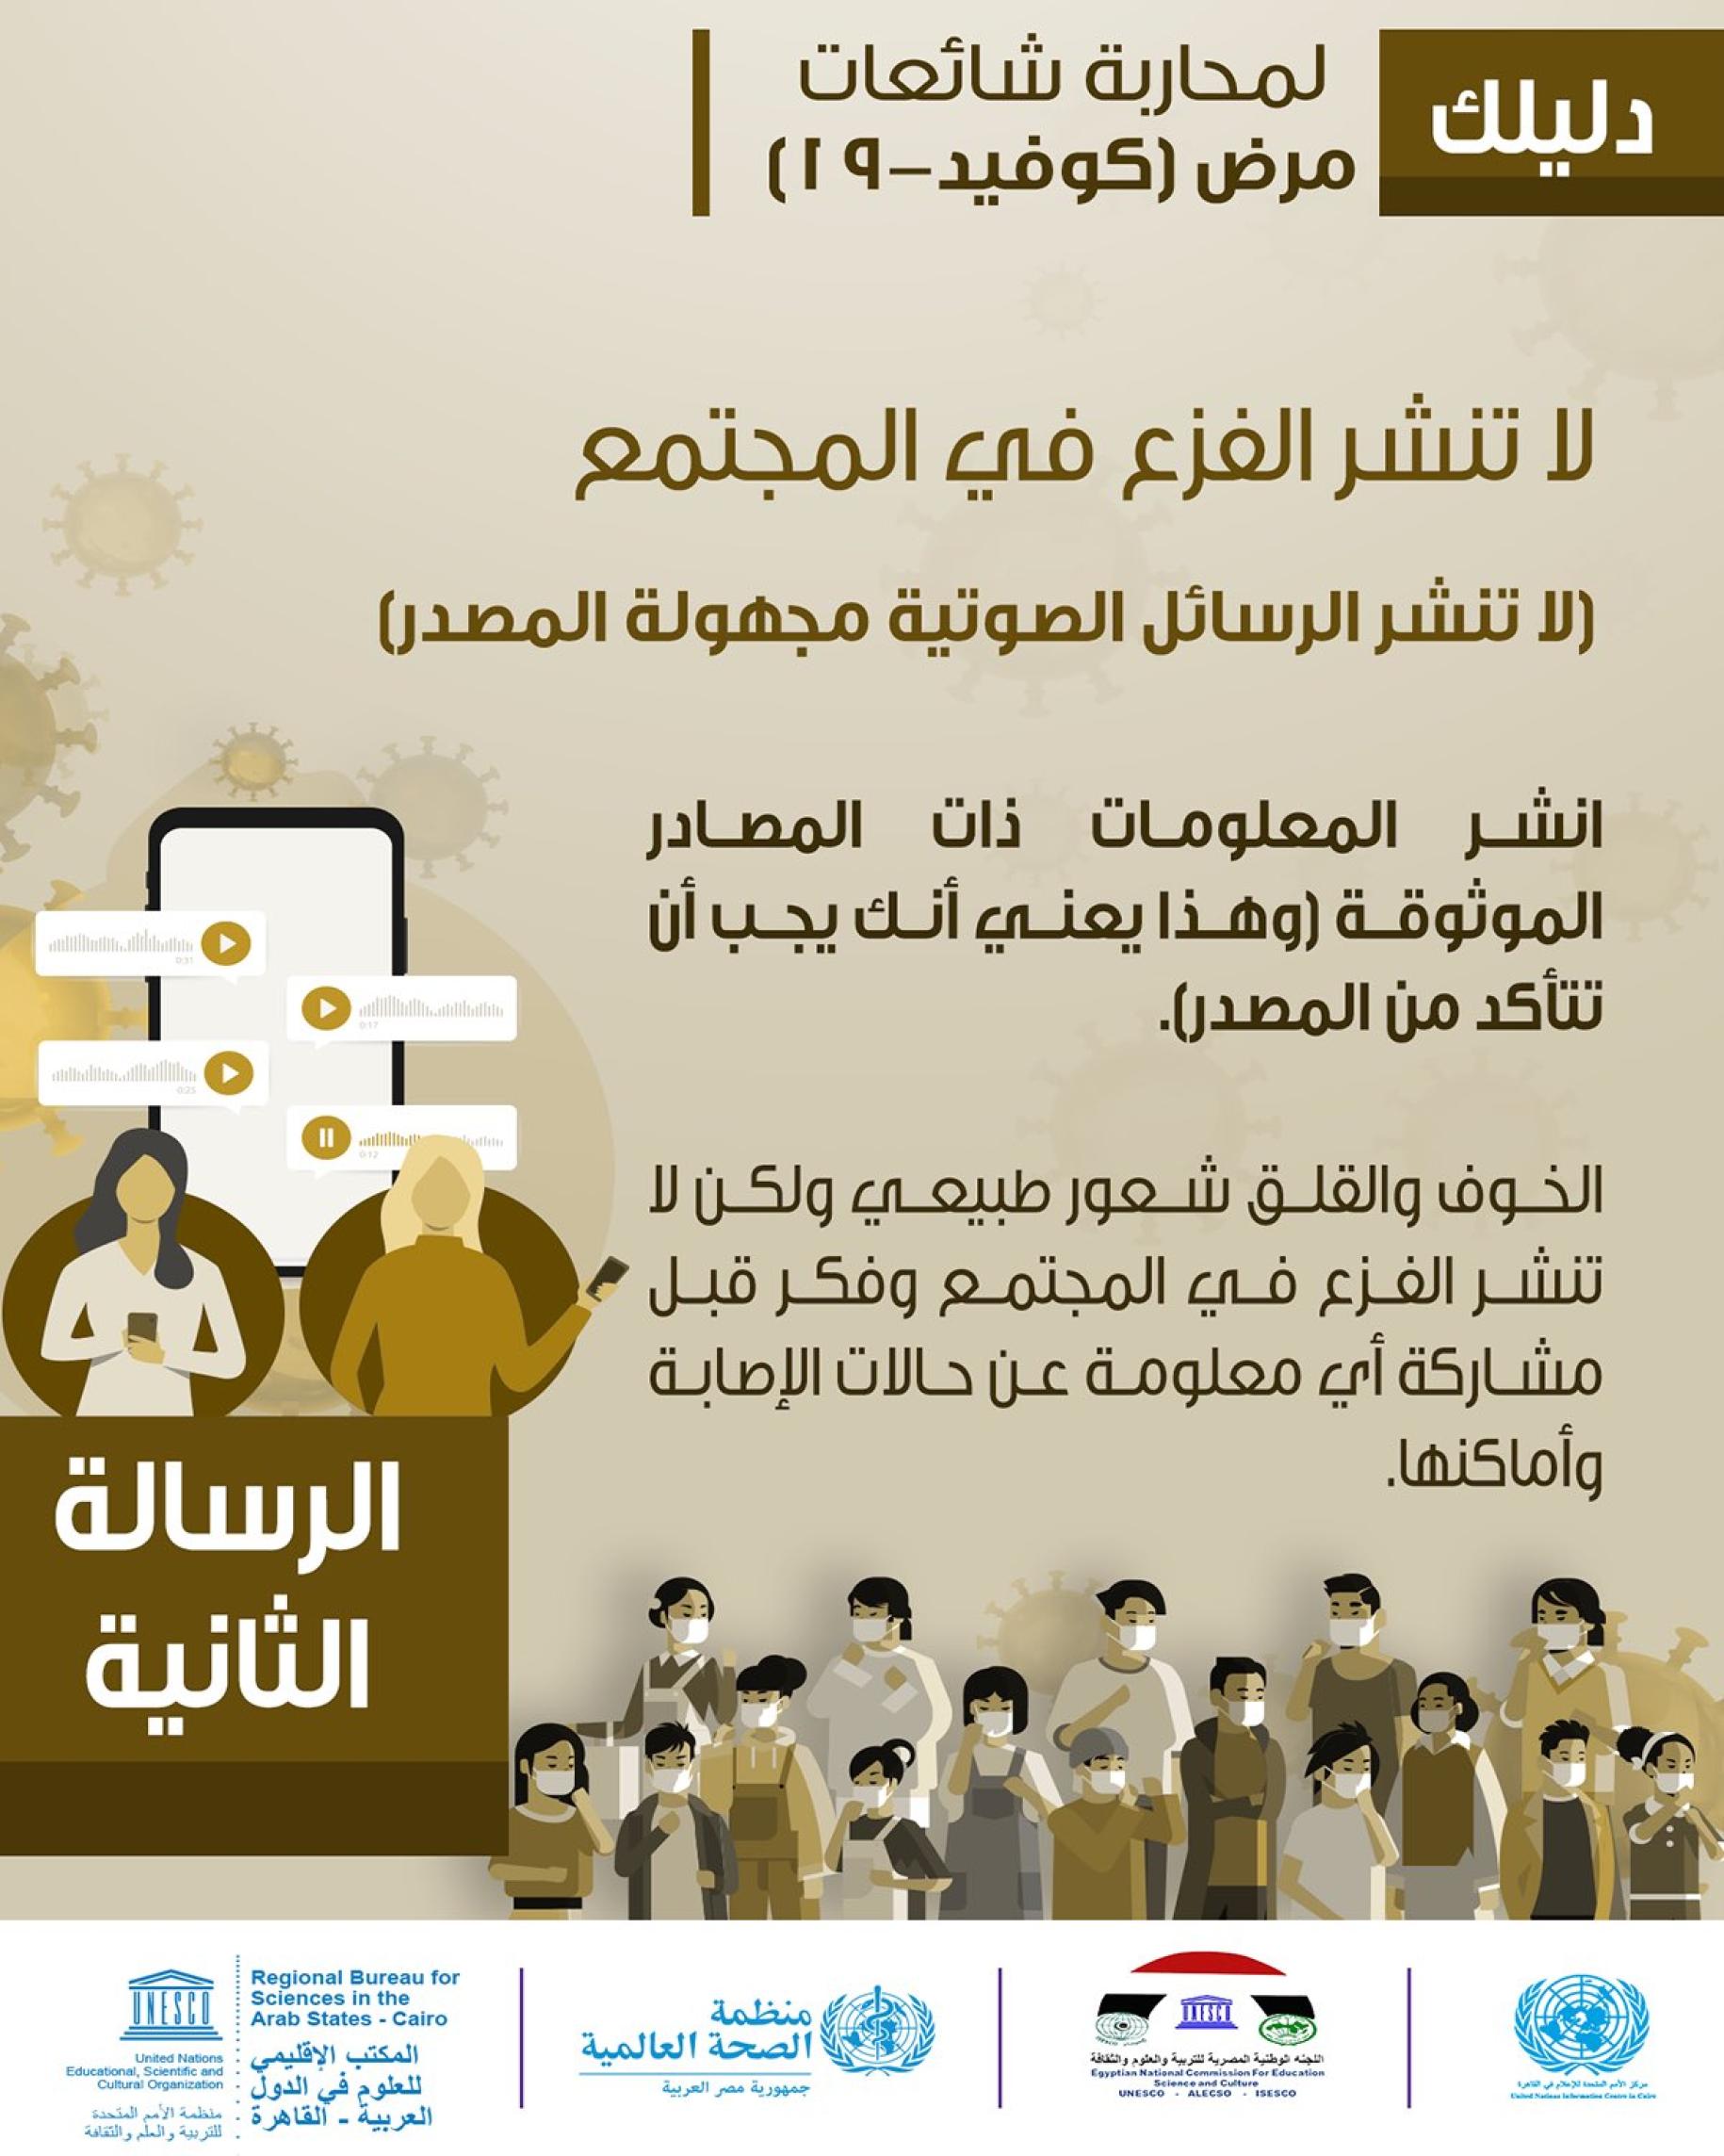 Publication sur les réseaux sociaux montrant un texte en arabe expliquant comment vérifier que la source d'une information est fiable et ce qu'il faut faire pour éviter les fausses informations.